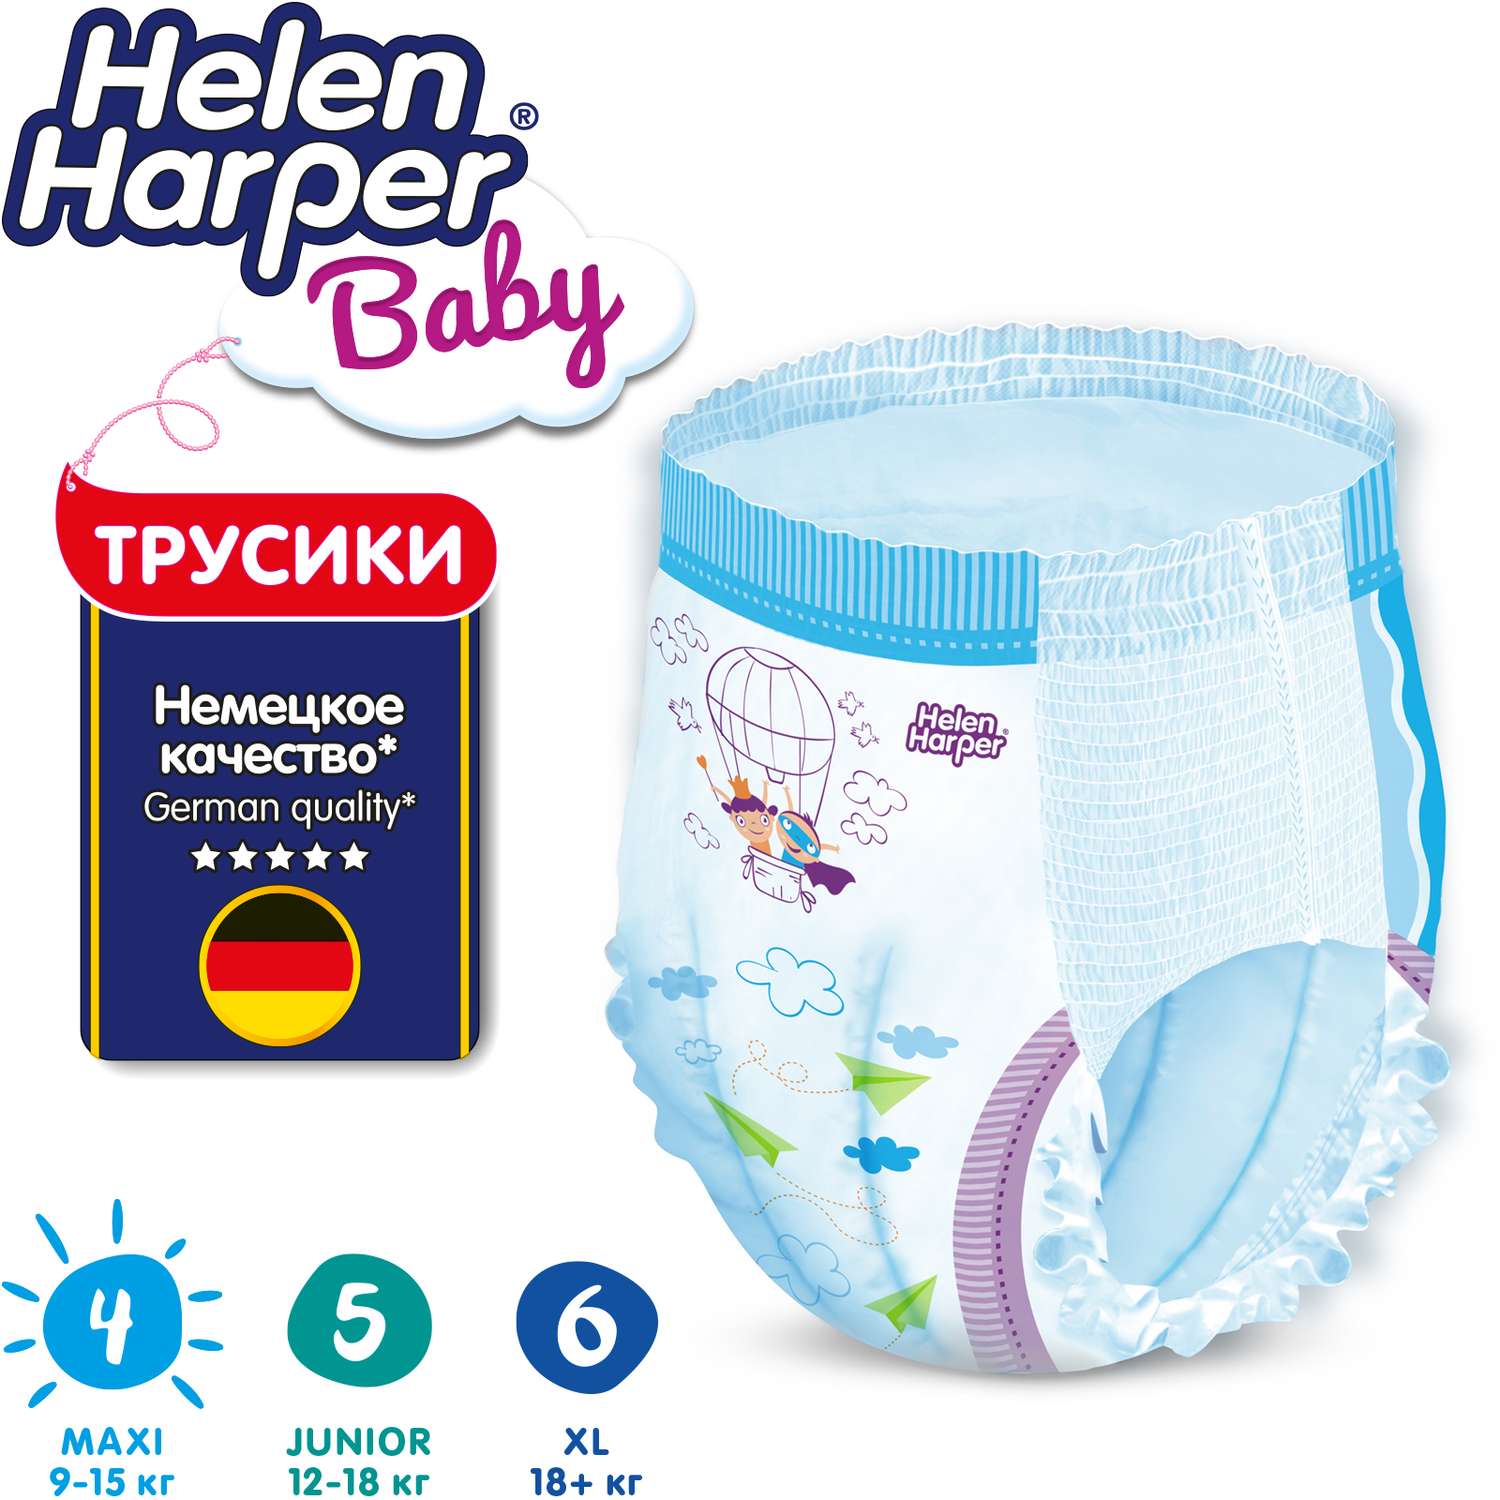 Трусики-подгузники детские Helen Harper Baby размер 4/Maxi 9-15 кг 80 шт. - фото 4